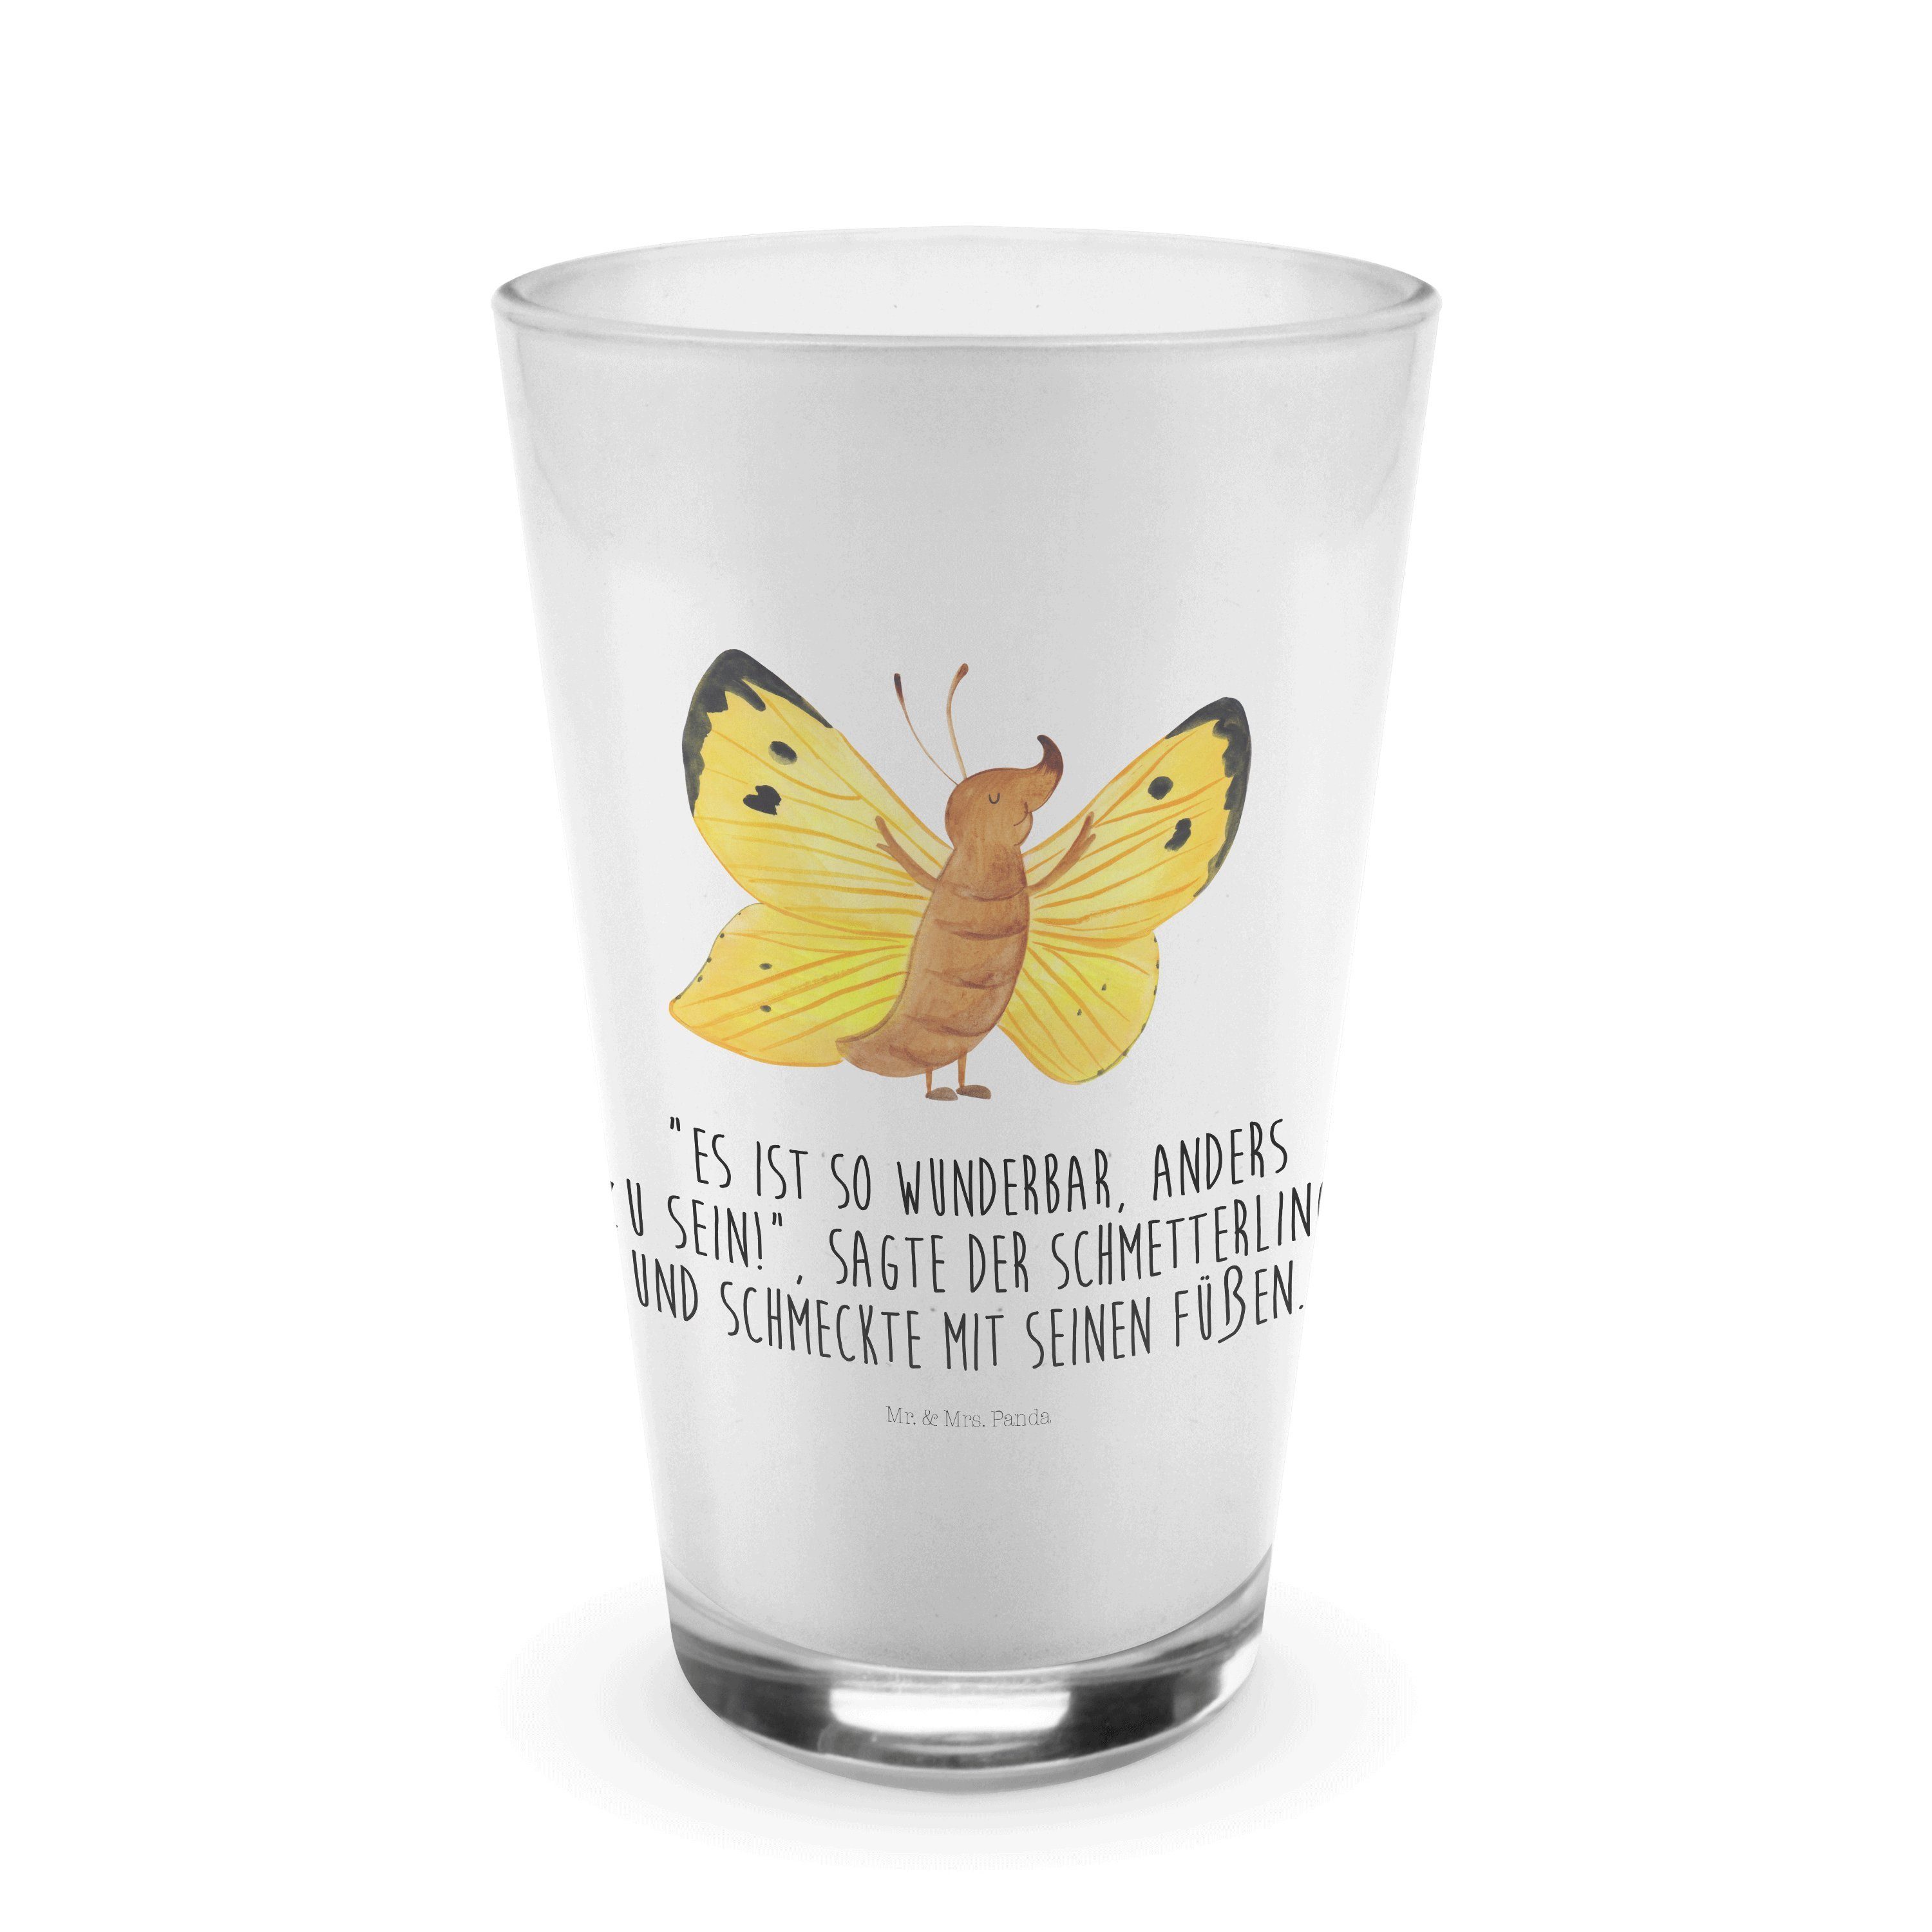 & Mrs. Zitronenfalter Geschenk, Transparent Premium Glas - Mr. Cappuccino Glas - Panda Gla, Schmetterling